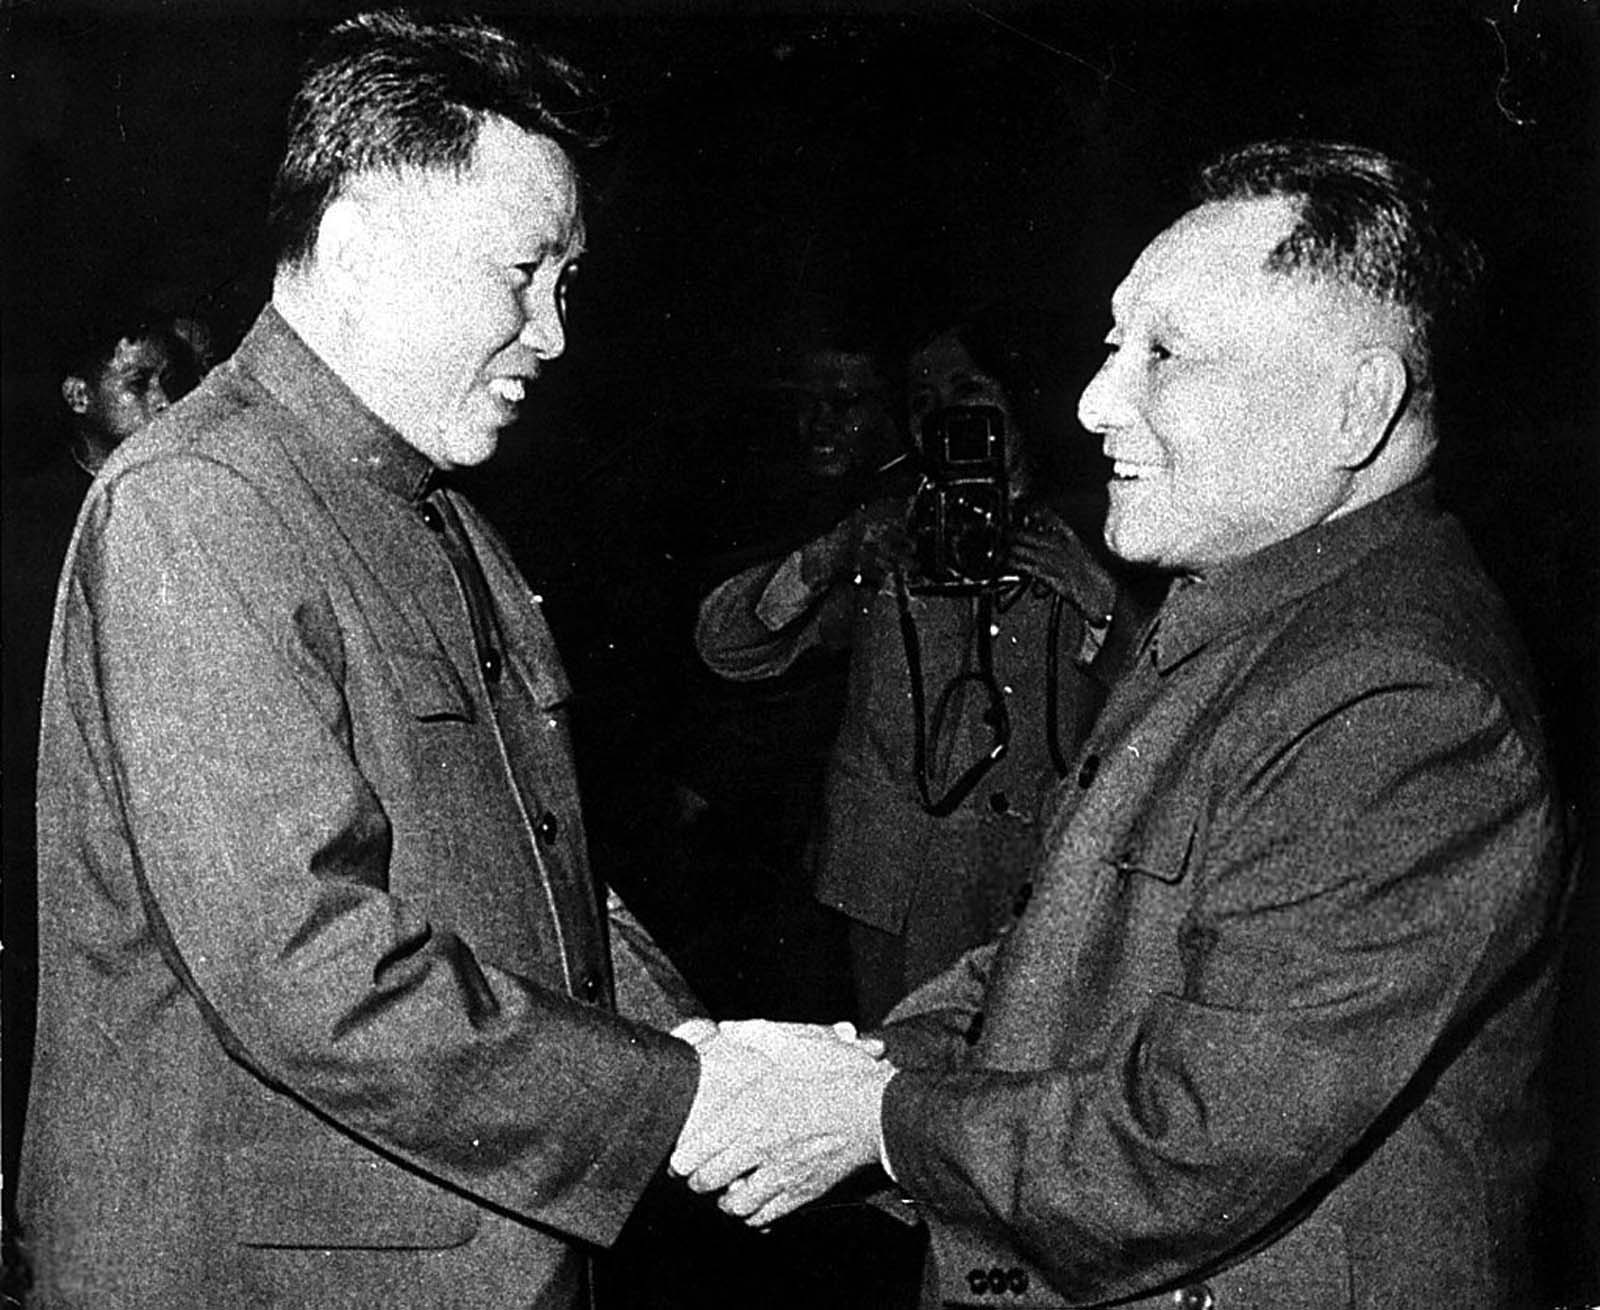 Pol Pot og Deng Xiaoping holder begge hender sammen, og smiler til hverandre. En fotograf tar bilde i bakgrunnen.